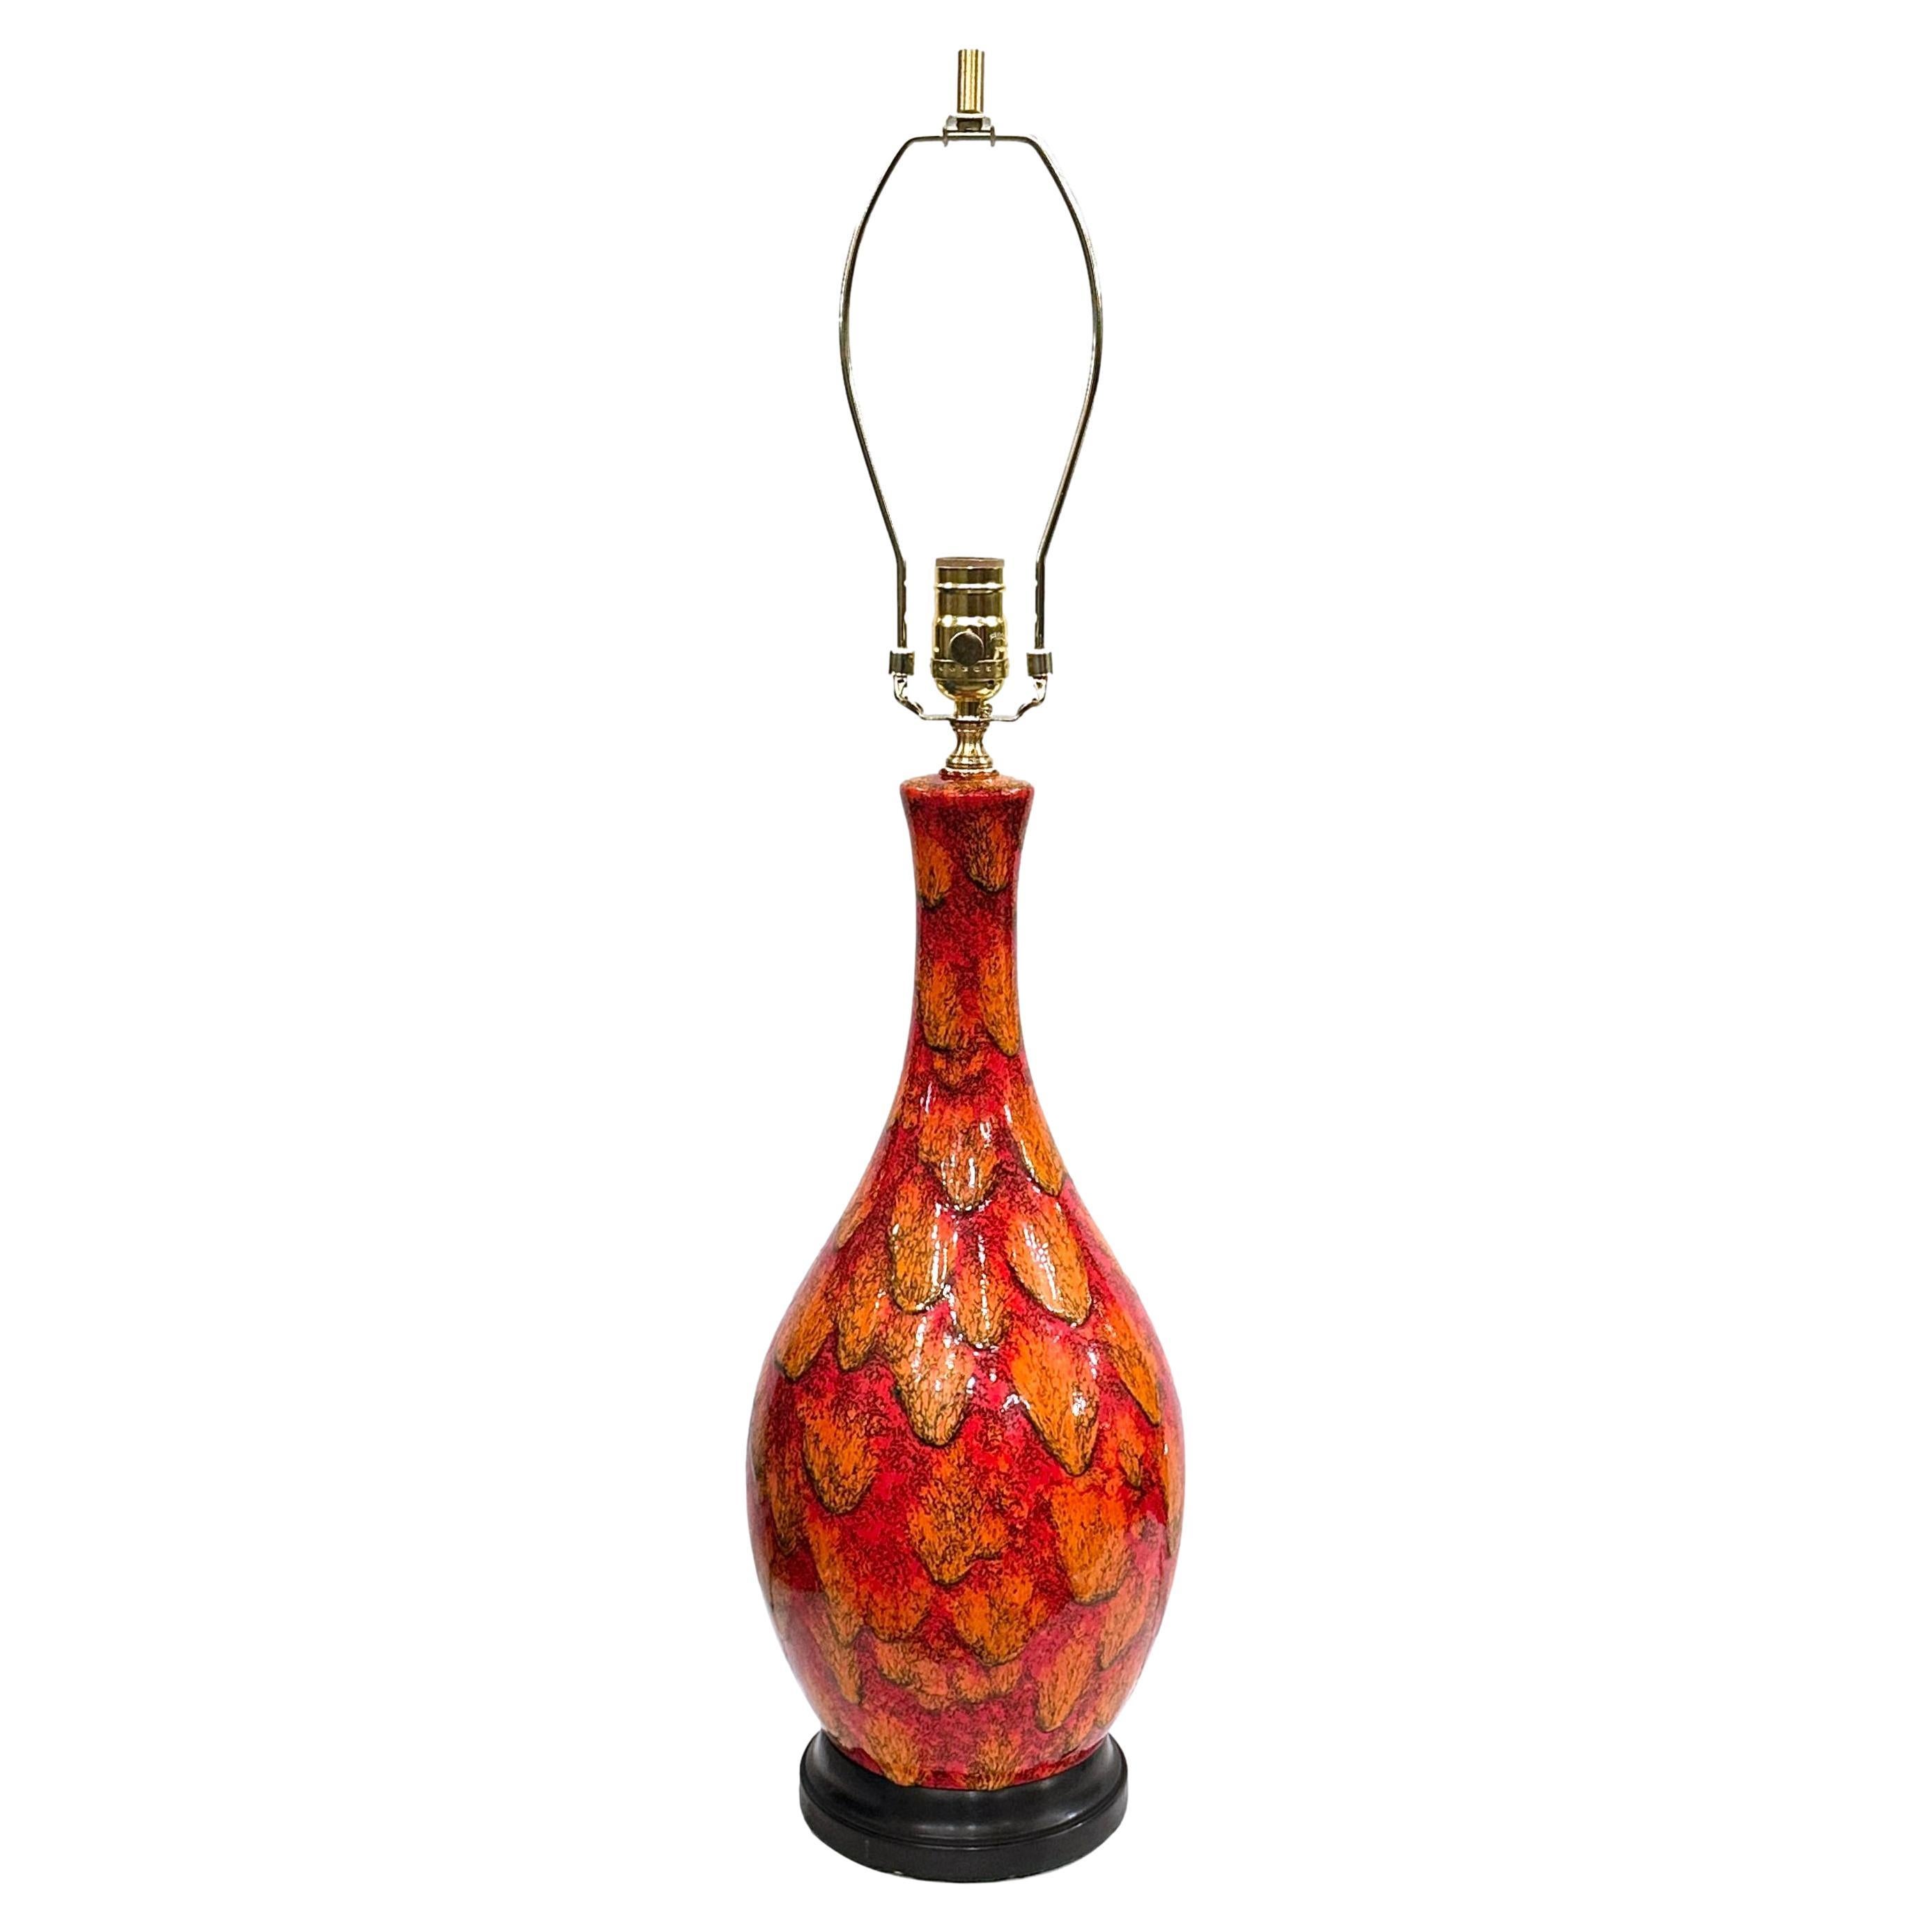 Midcentury Red Italian Ceramic Lamp